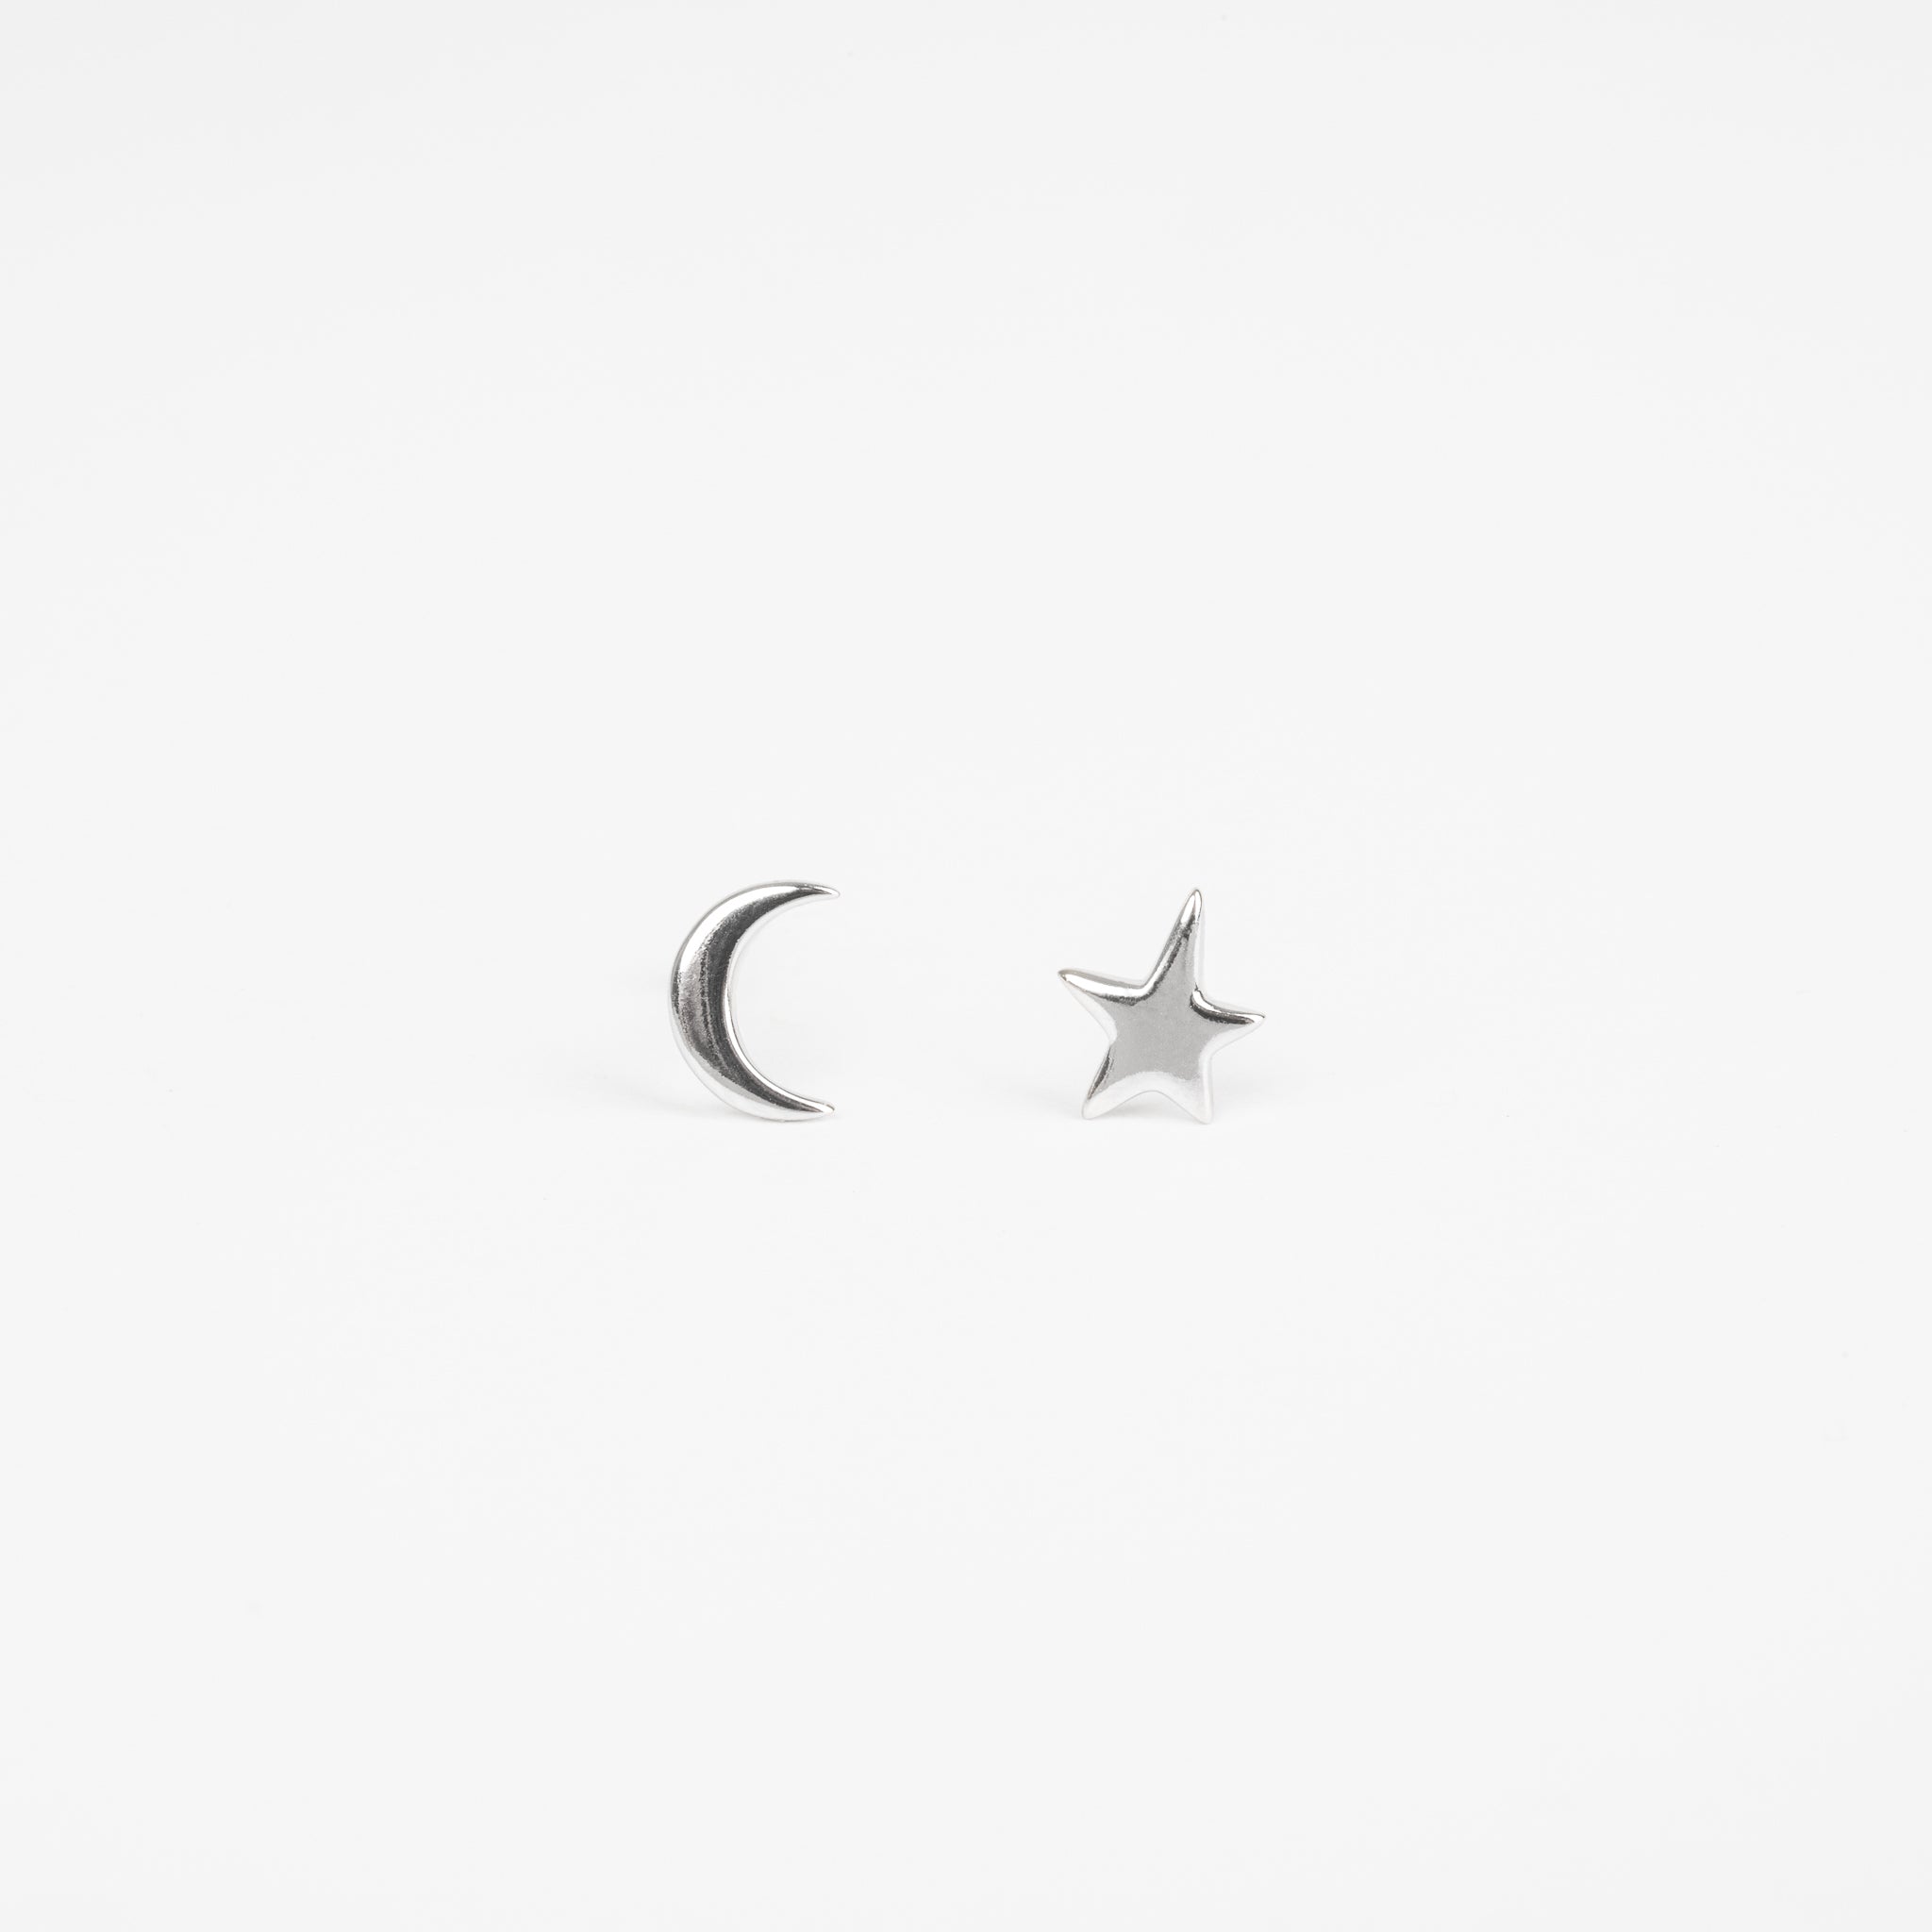 The Night Sky - Silver Moon Star Stud Earrings